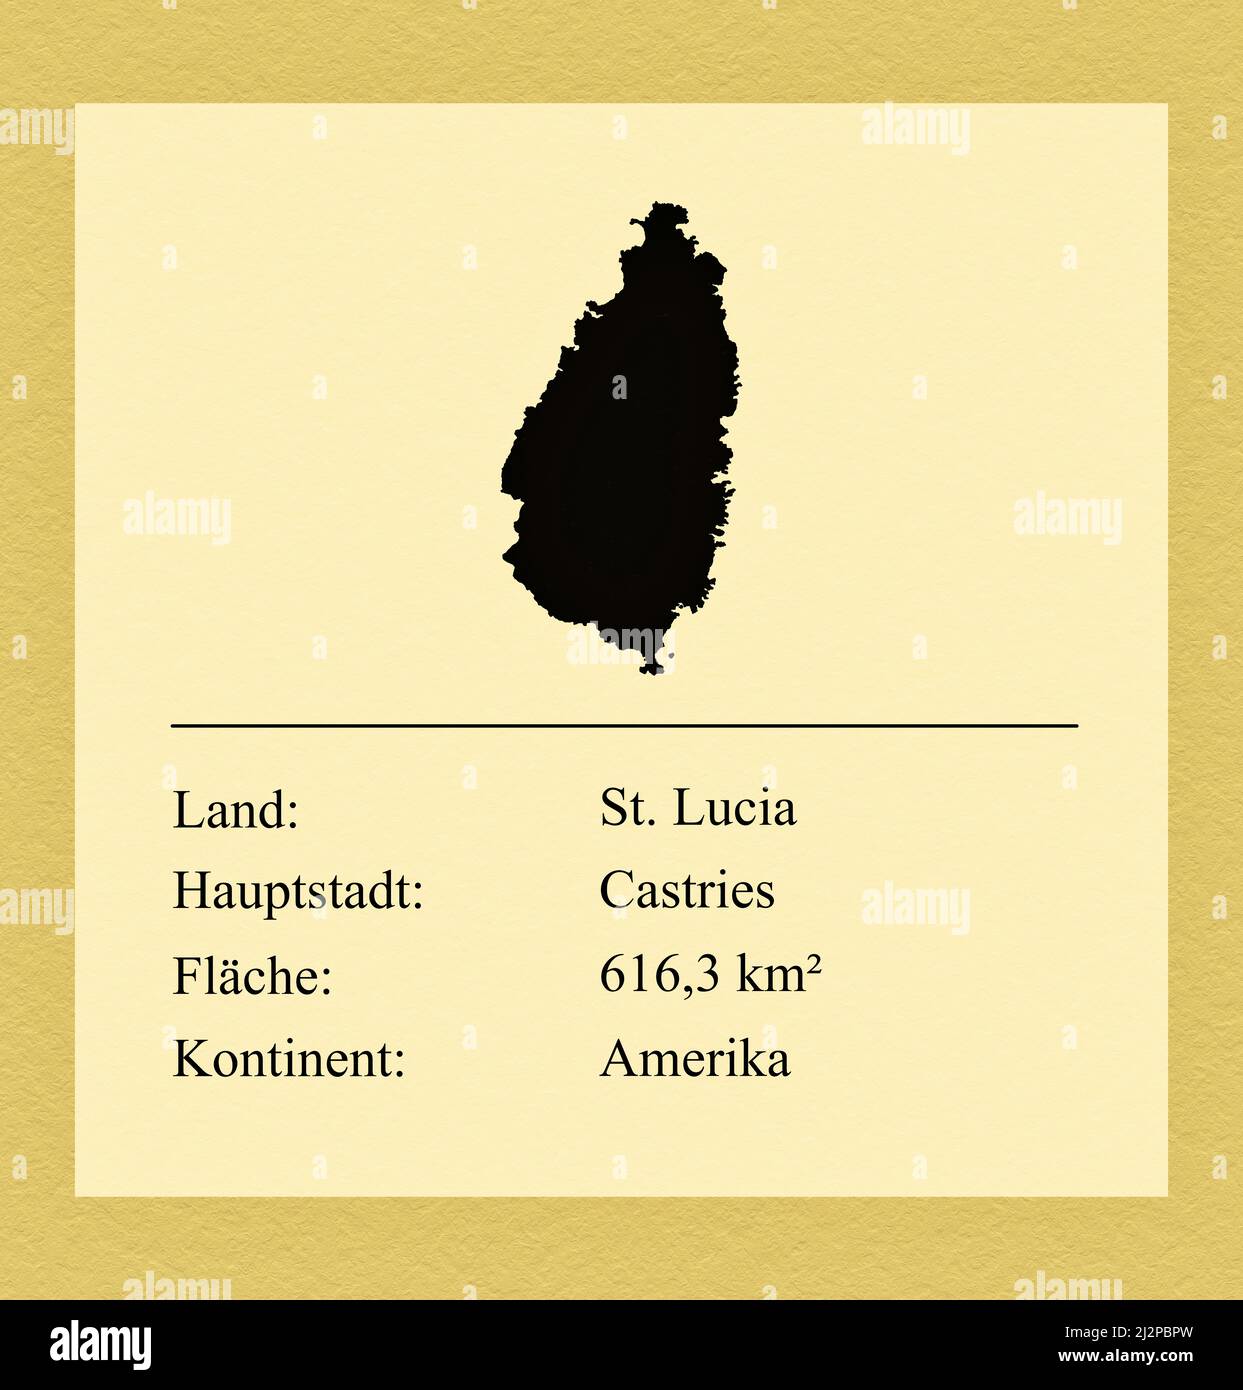 Umrisse des Landes Santa Lucía, darunter ein kleiner Steckbrief mit Ländernamen, Hauptstadt, Fläche und Kontinent Foto de stock